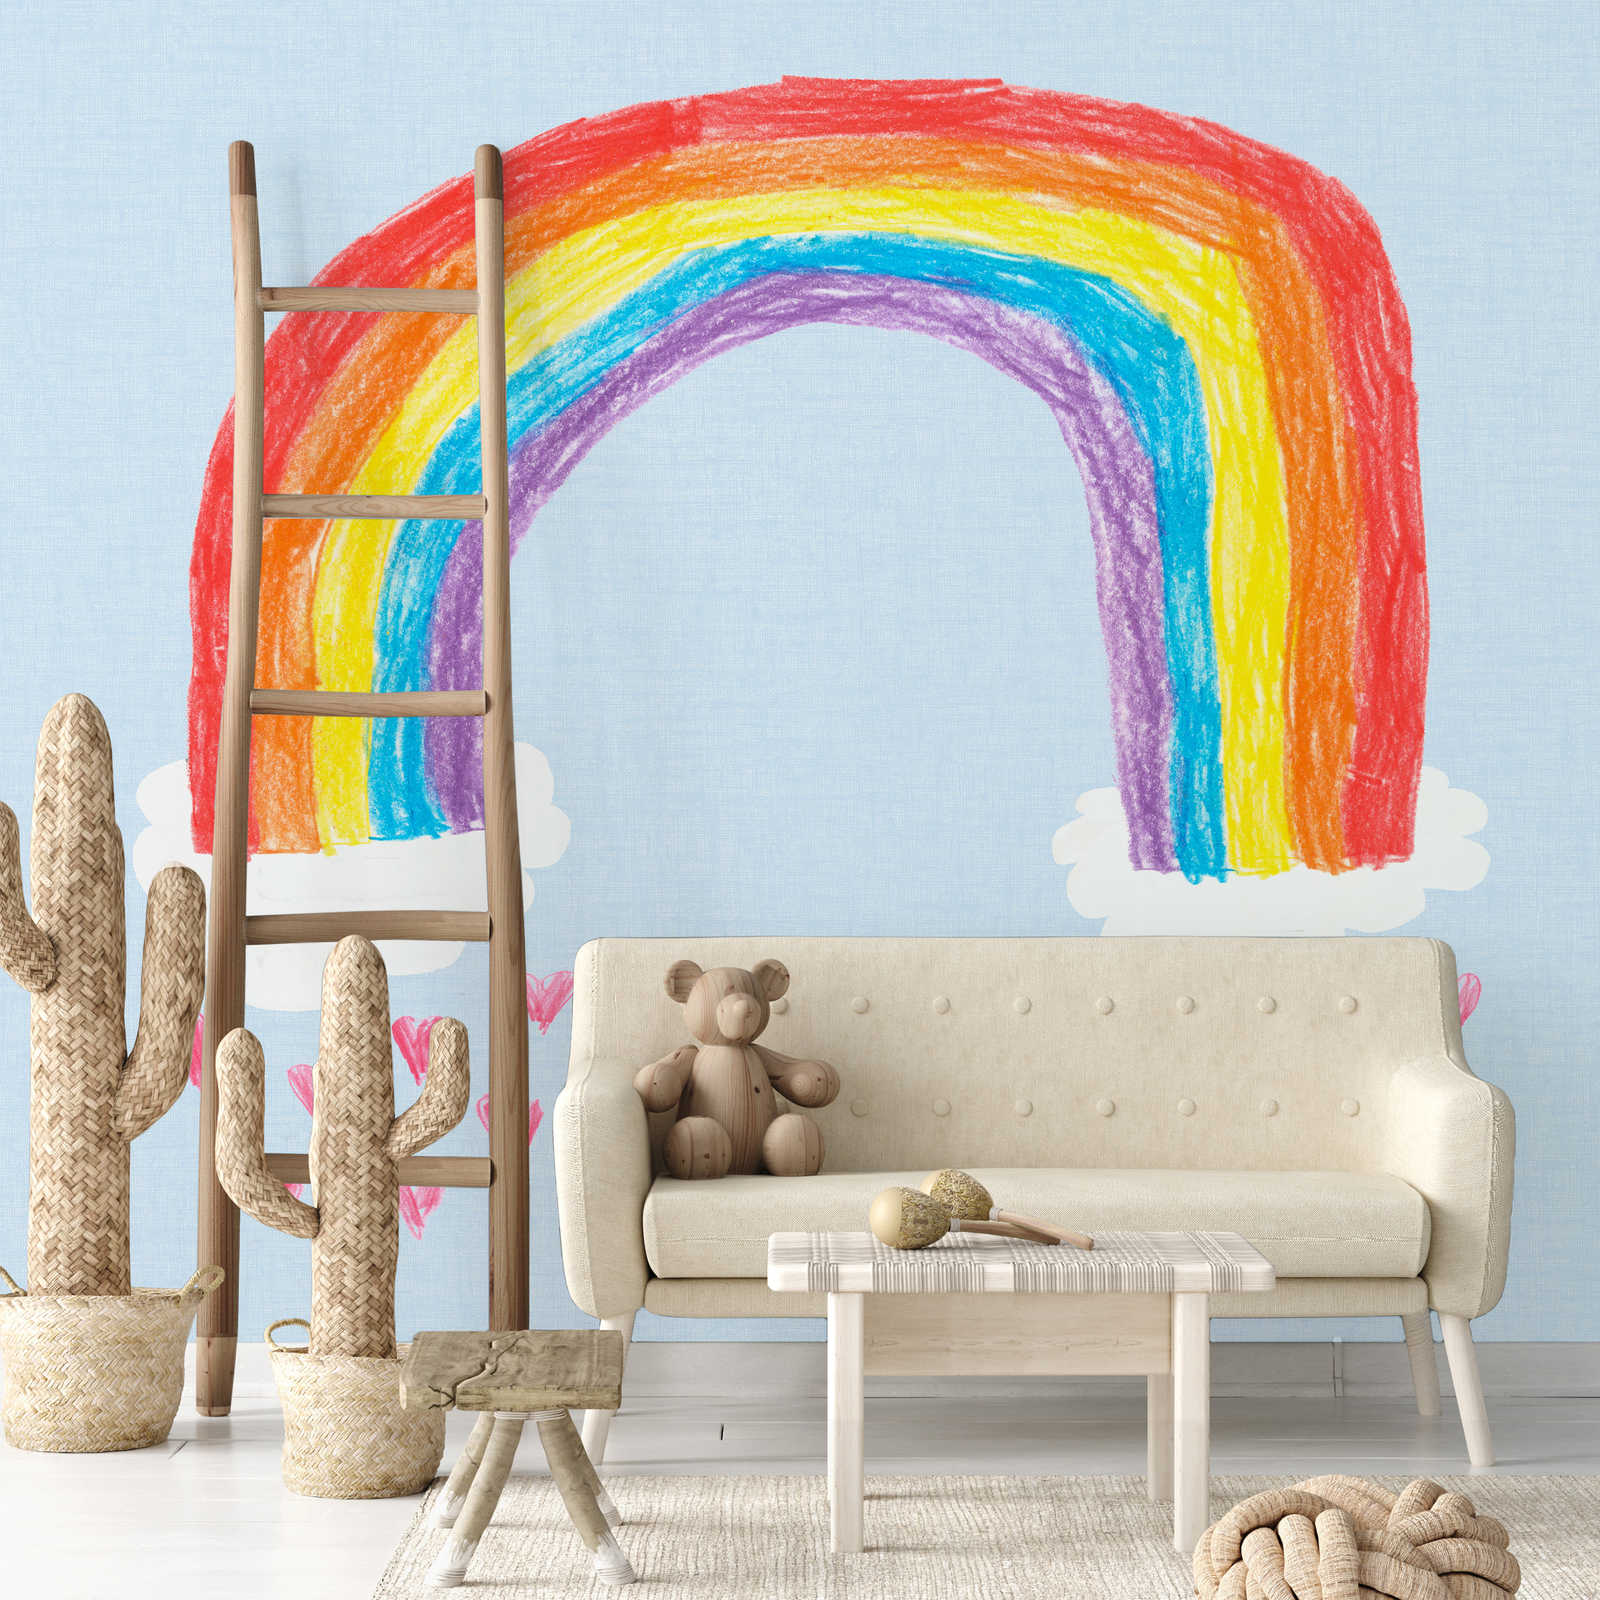             Fototapete selbstgemalter Regenbogen für Kinderzimmer
        